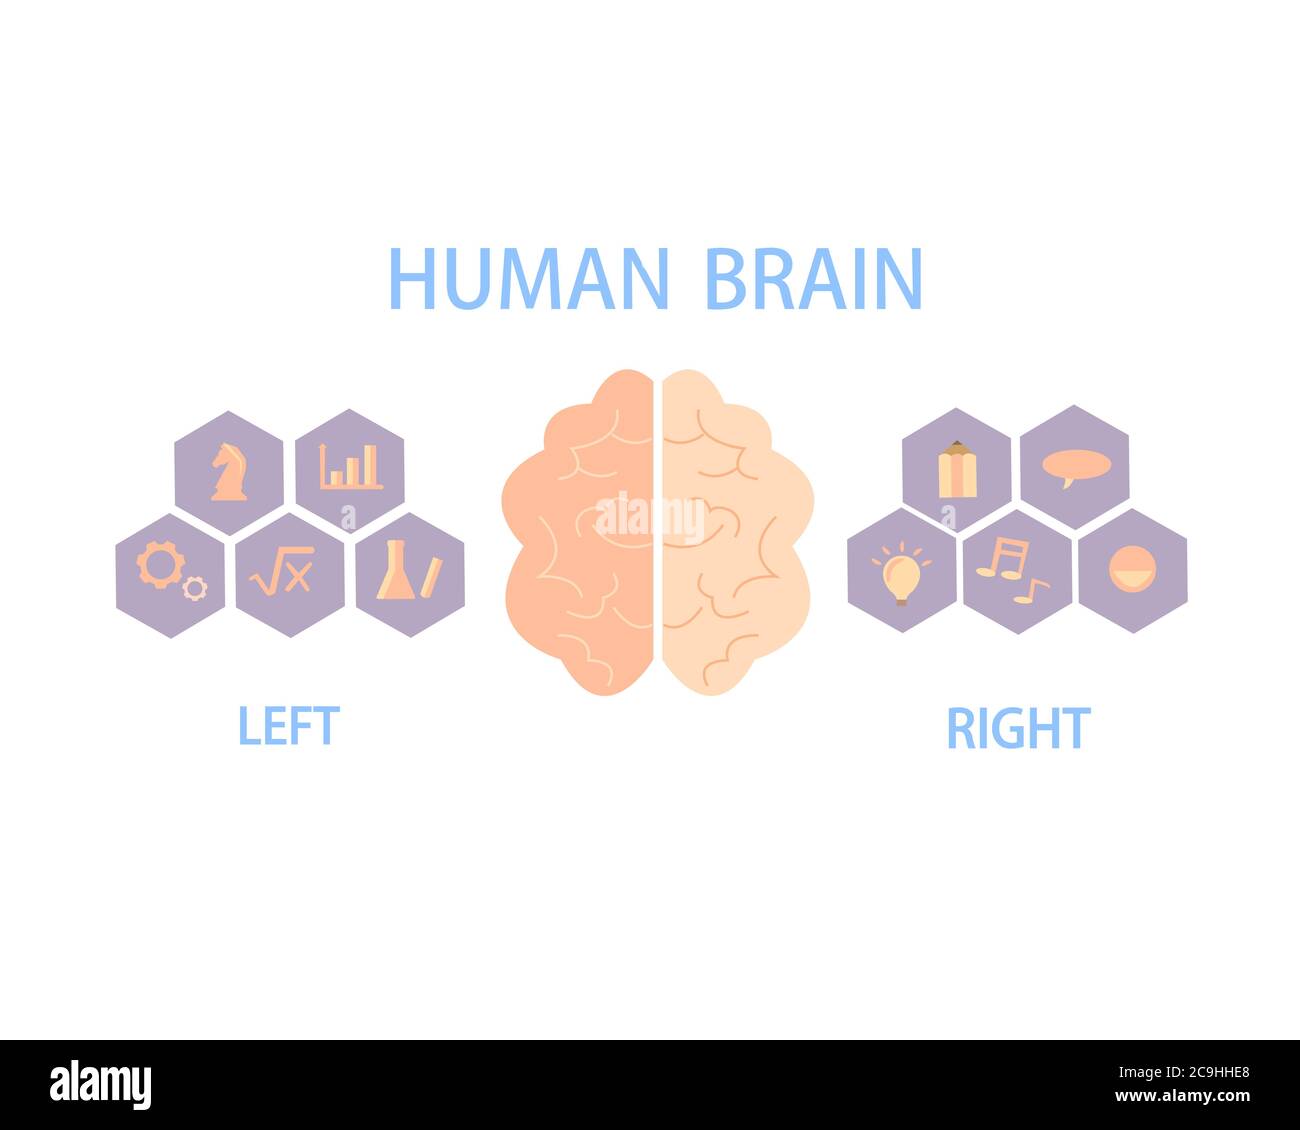 Das menschliche Gehirn teilt sich in linke und rechte Hemisphären auf, um den Körper und das Verhalten zu kontrollieren. Stock Vektor